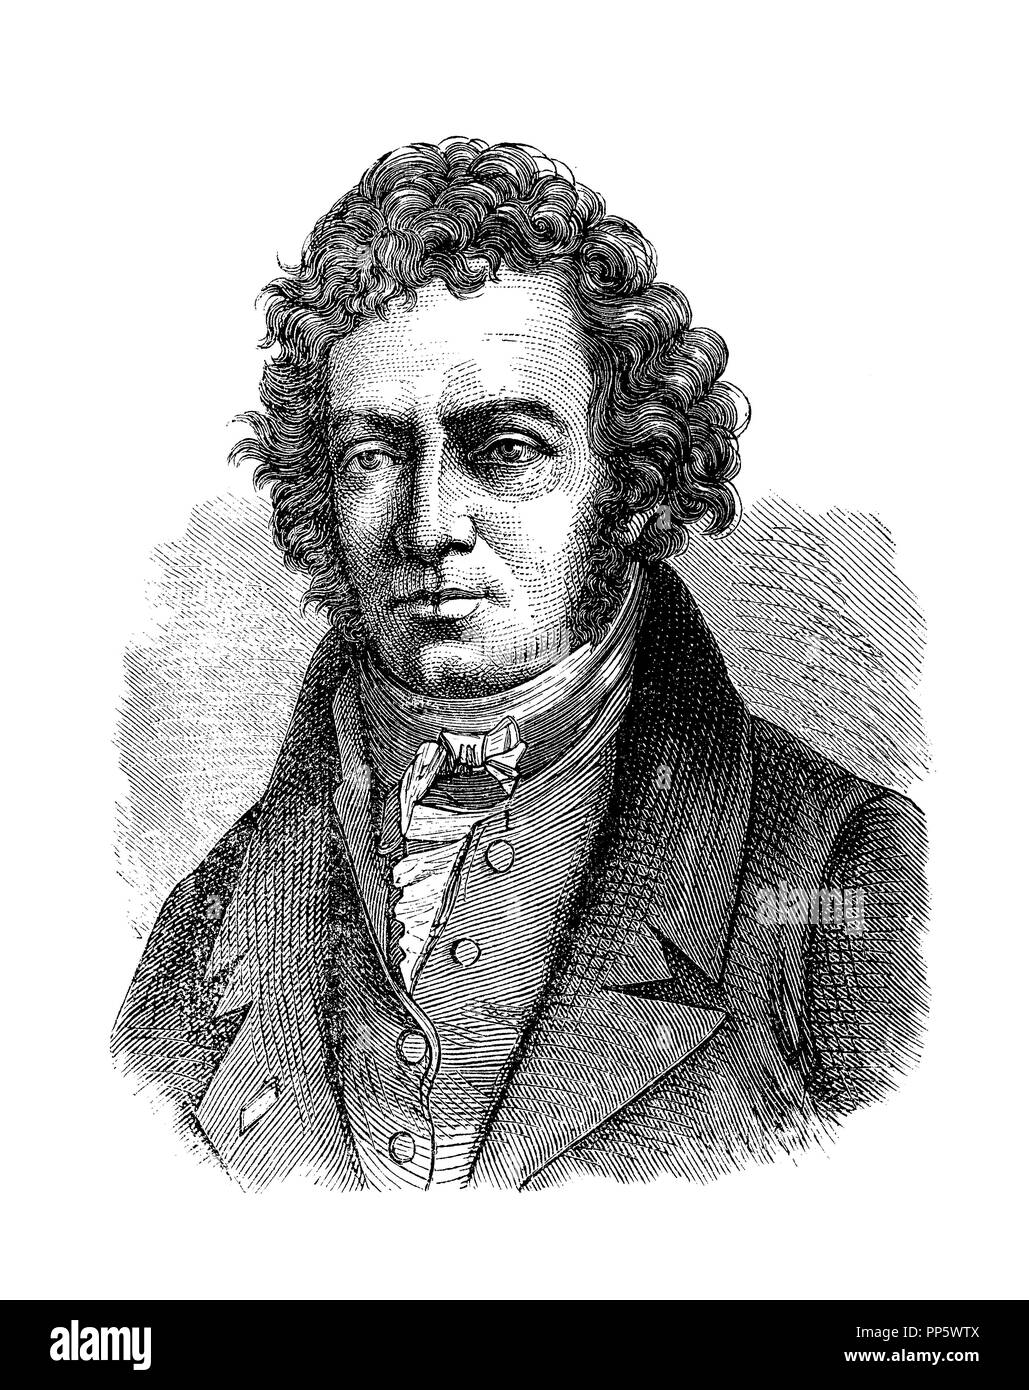 Ritratto di incisione di André-Marie Ampère (1775-1836), francese fisico e matematico fondatore dell'elettrodinamica, inventore e auctodidact. Foto Stock